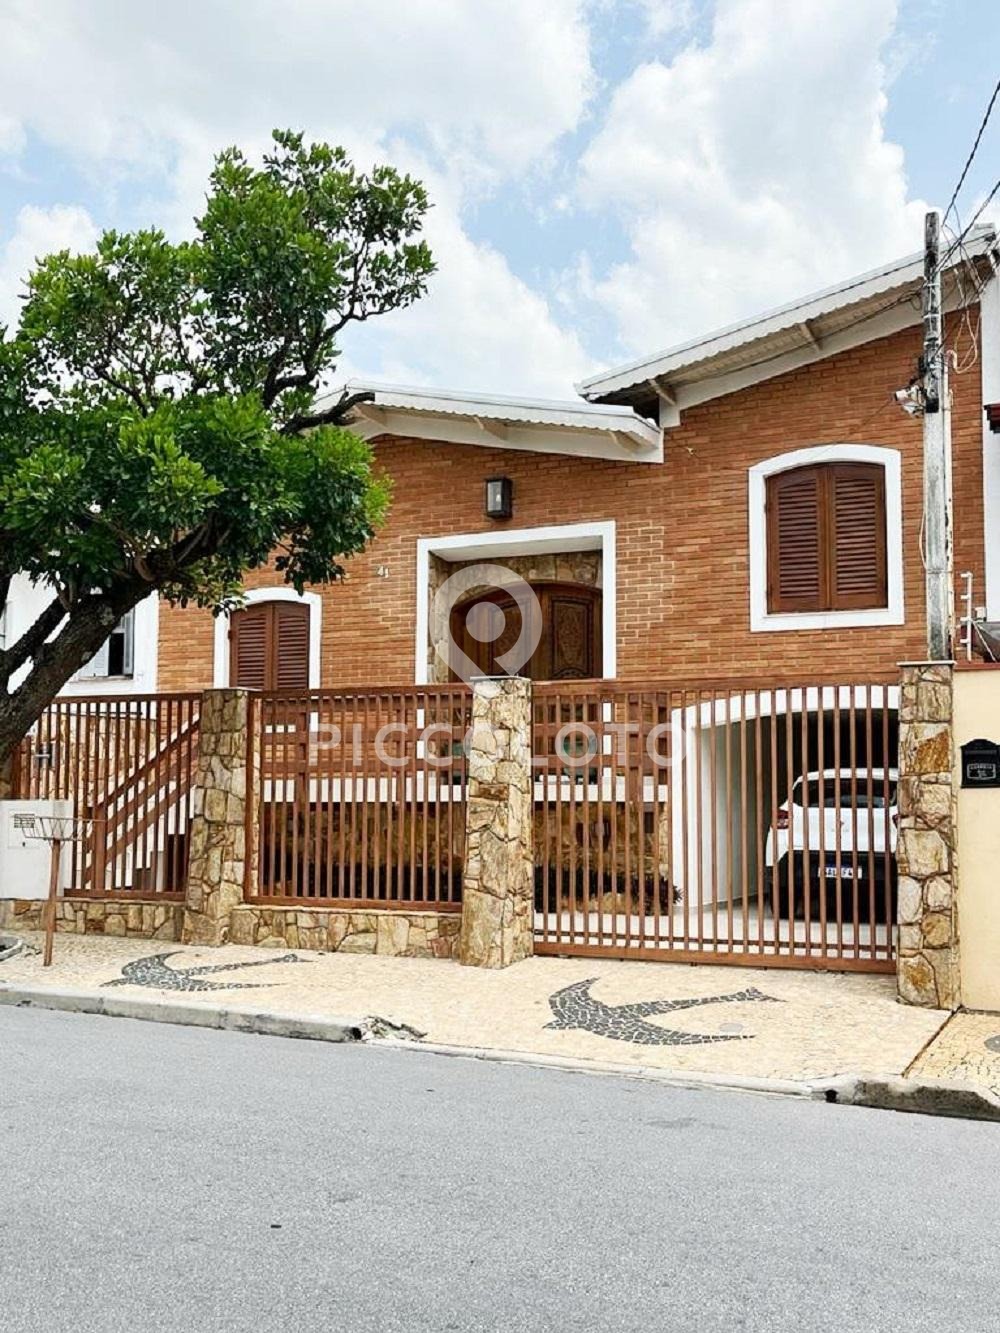 Piccoloto -Casa à venda no Jardim Leonor em Campinas